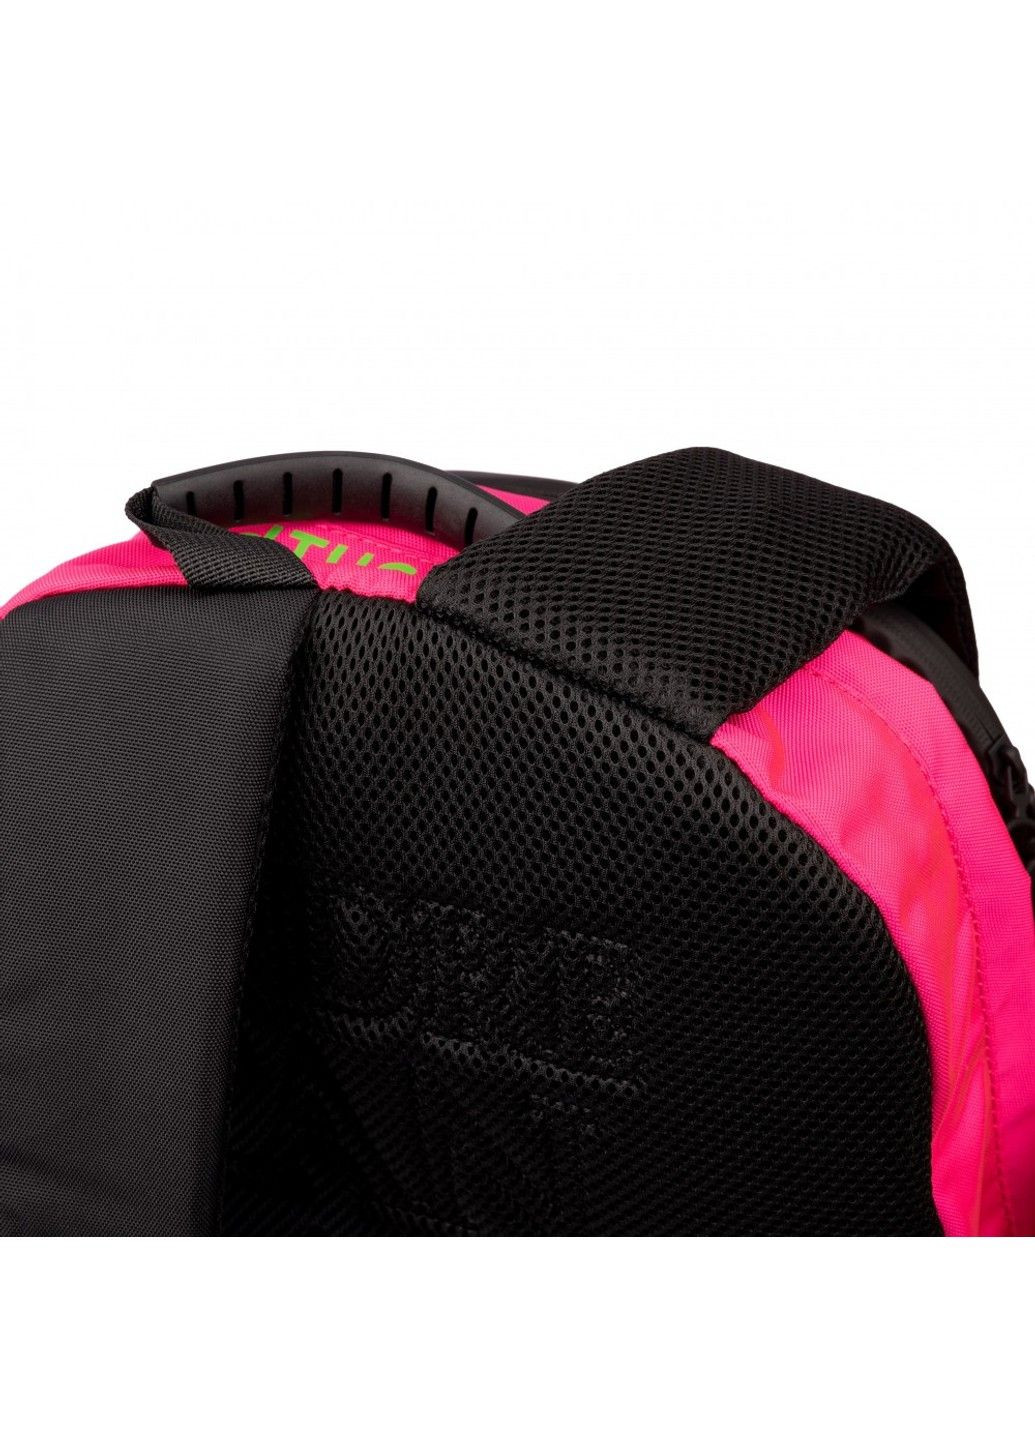 Шкільний рюкзак для молодших класів T-129 by Andre Tan Hand pink Yes (278404500)